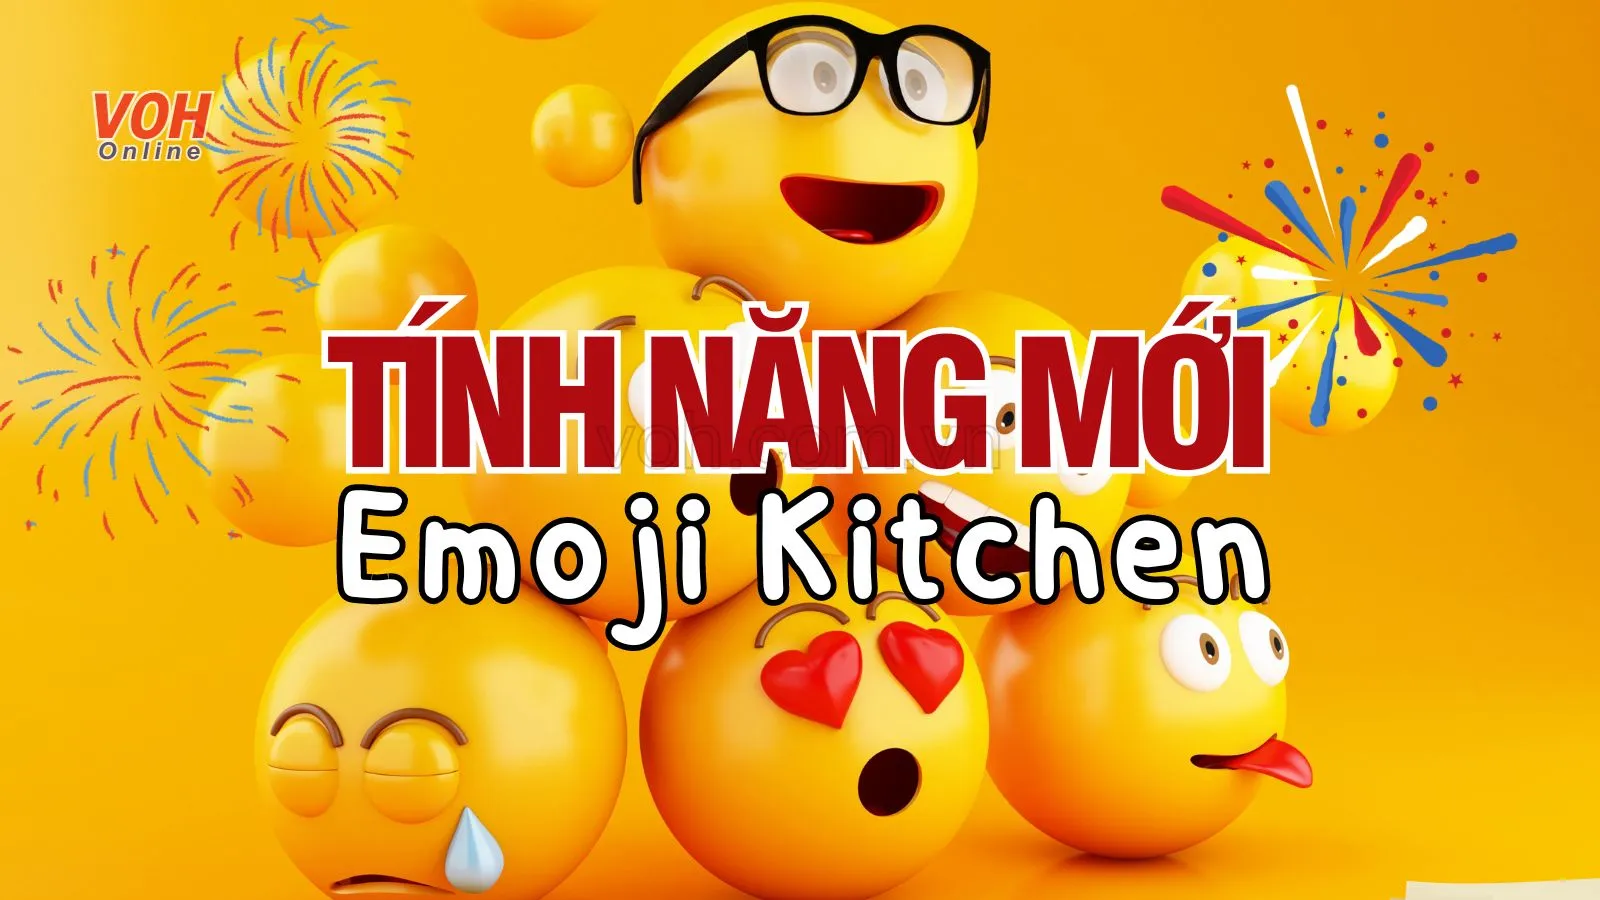 Emoji Kitchen: Kết hợp 2 Emoji tạo cảm xúc mới trên điện thoại, máy tính